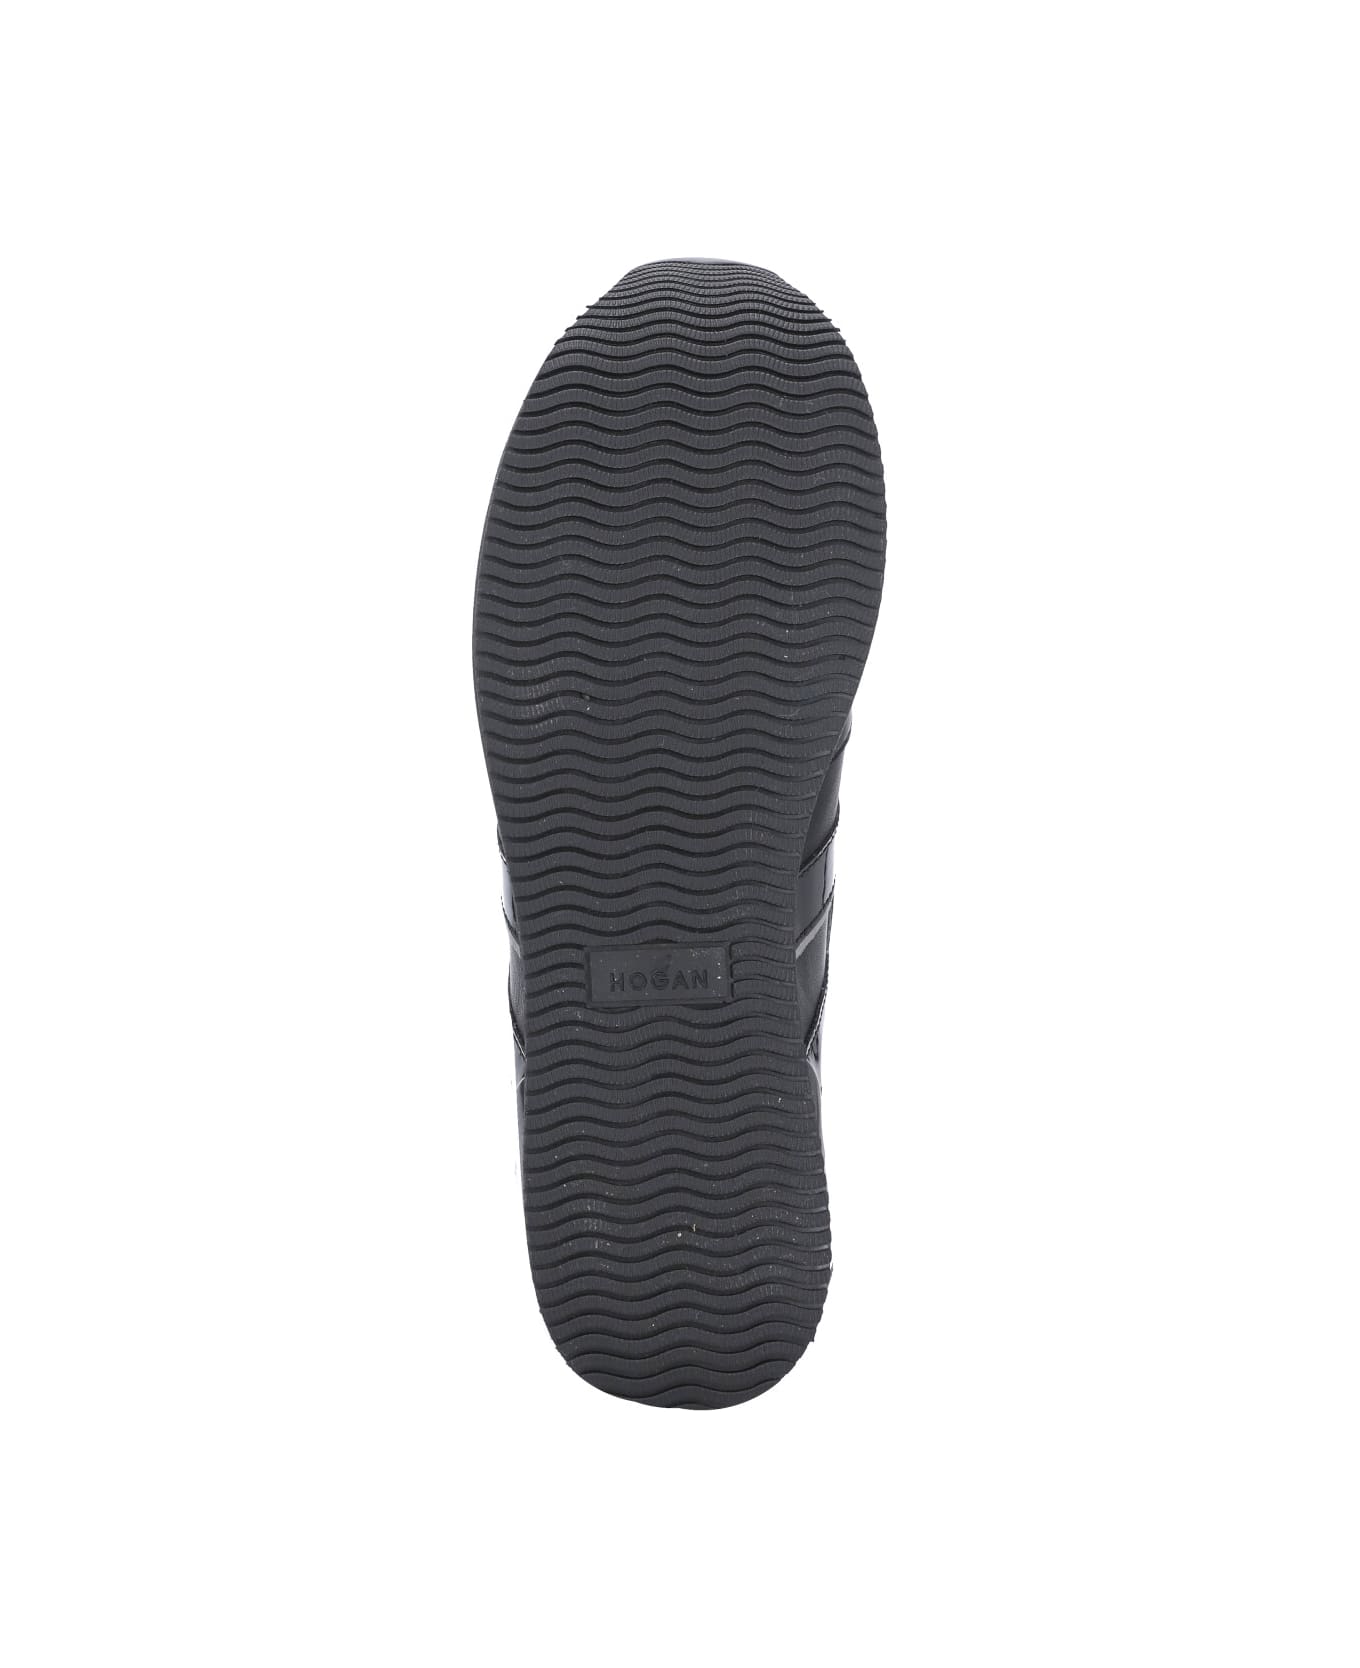 Hogan Midi H222 Sneakers - Black